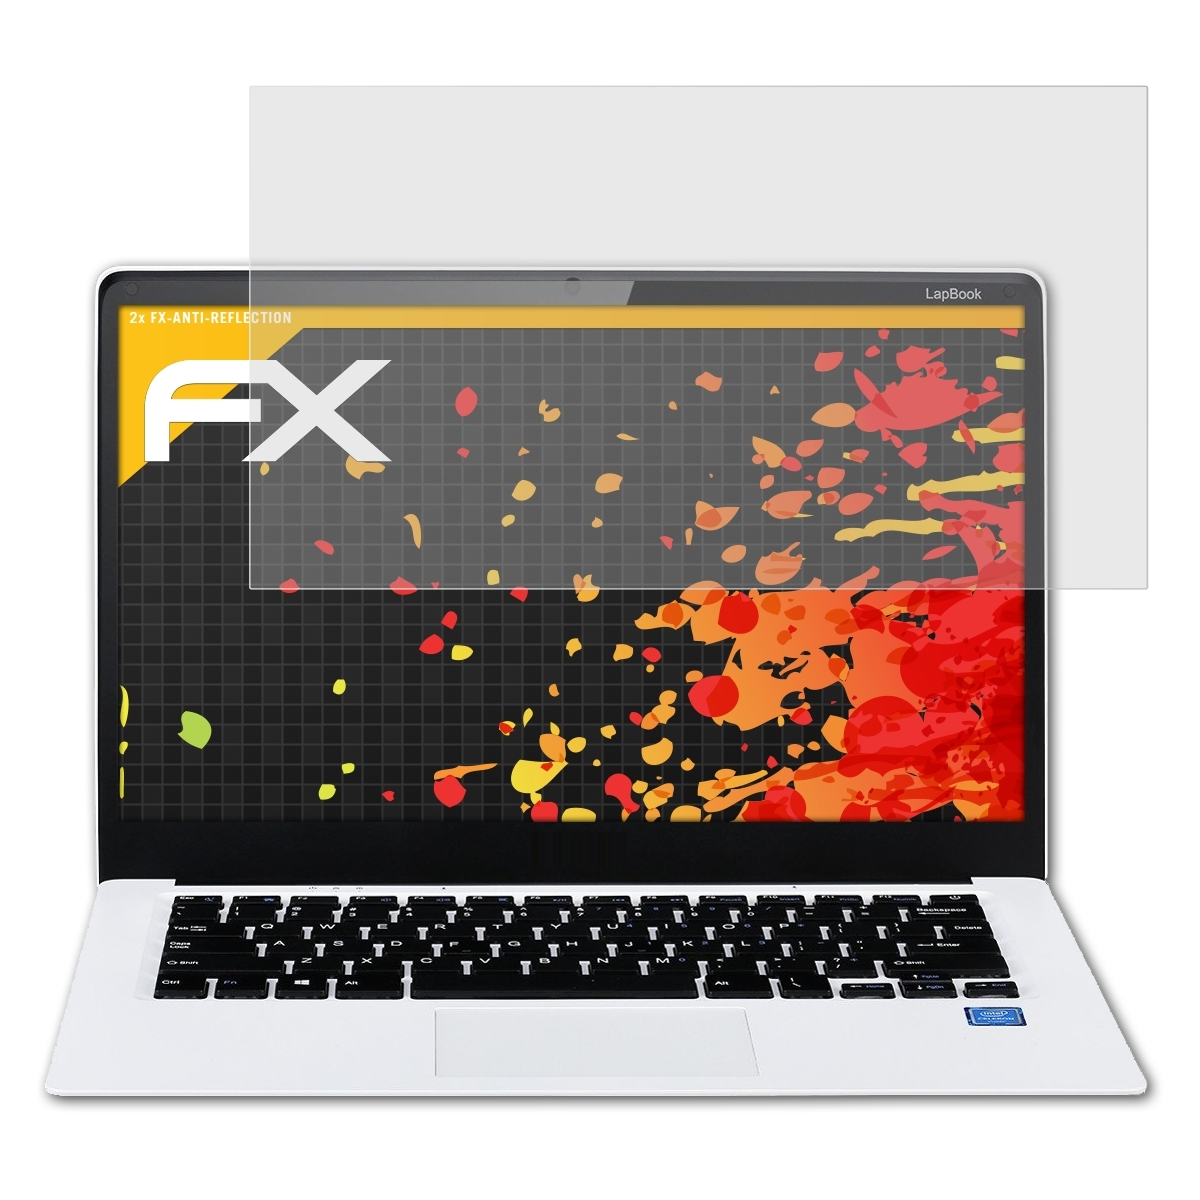 14,1) LapBook 2x ATFOLIX FX-Antireflex Chuwi Displayschutz(für